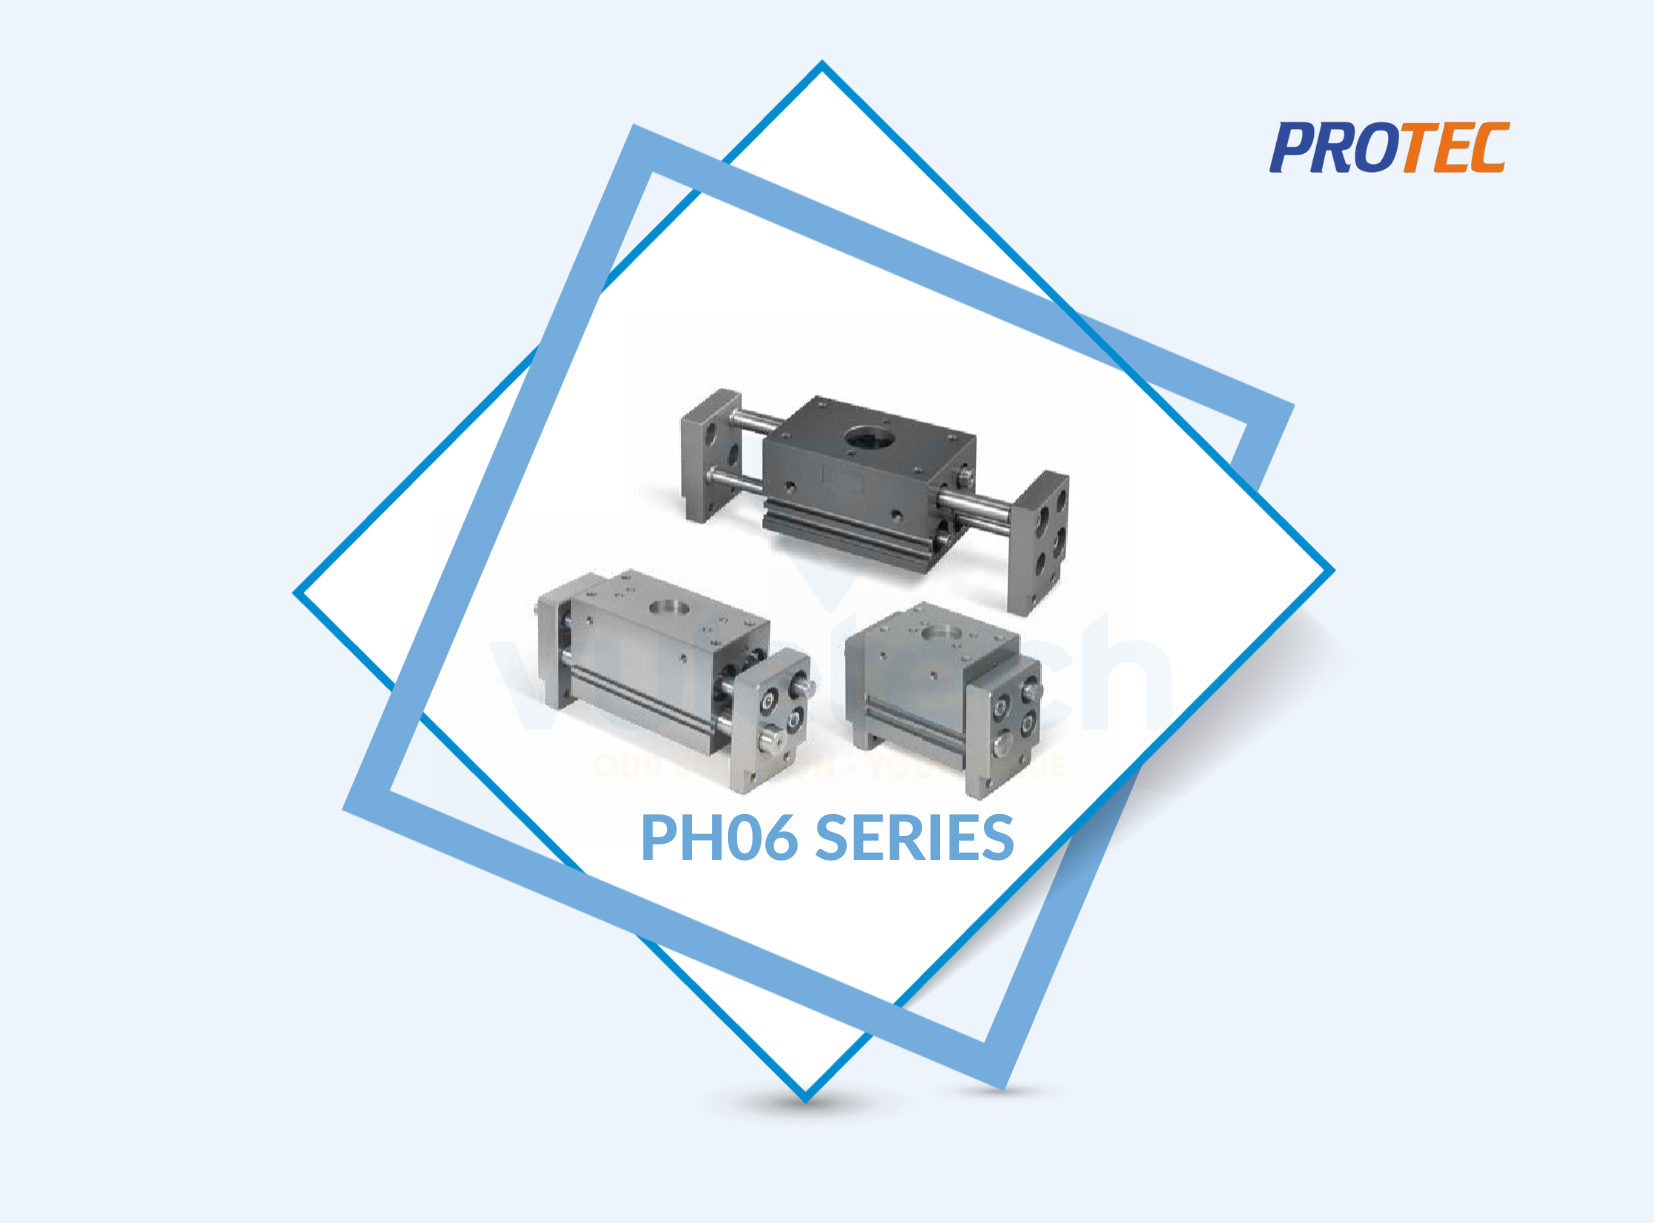 PH06 Series Protec